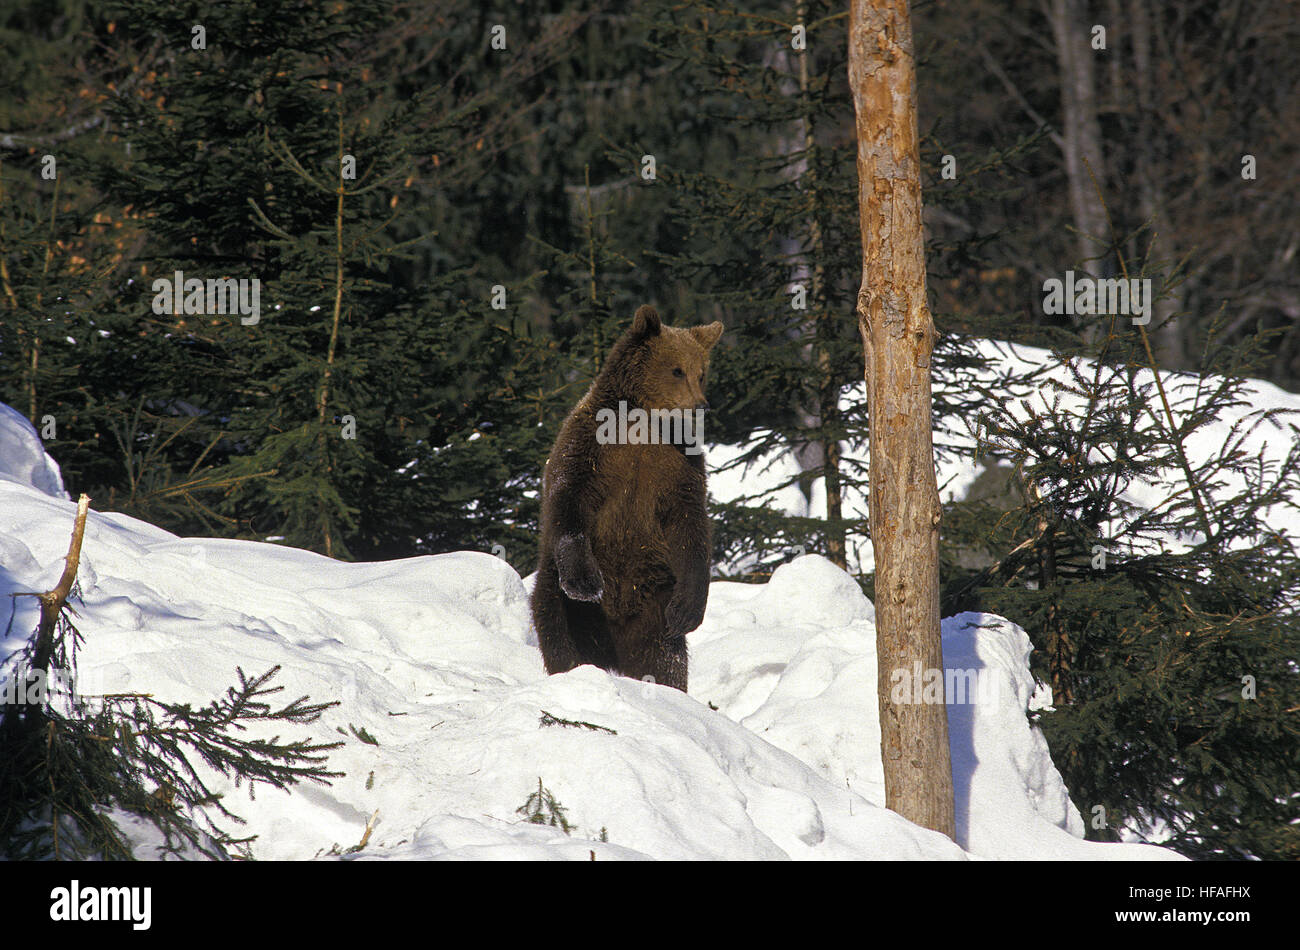 Ours brun, Ursus arctos, adulte debout sur ses pattes de derrière, debout dans la neige Banque D'Images